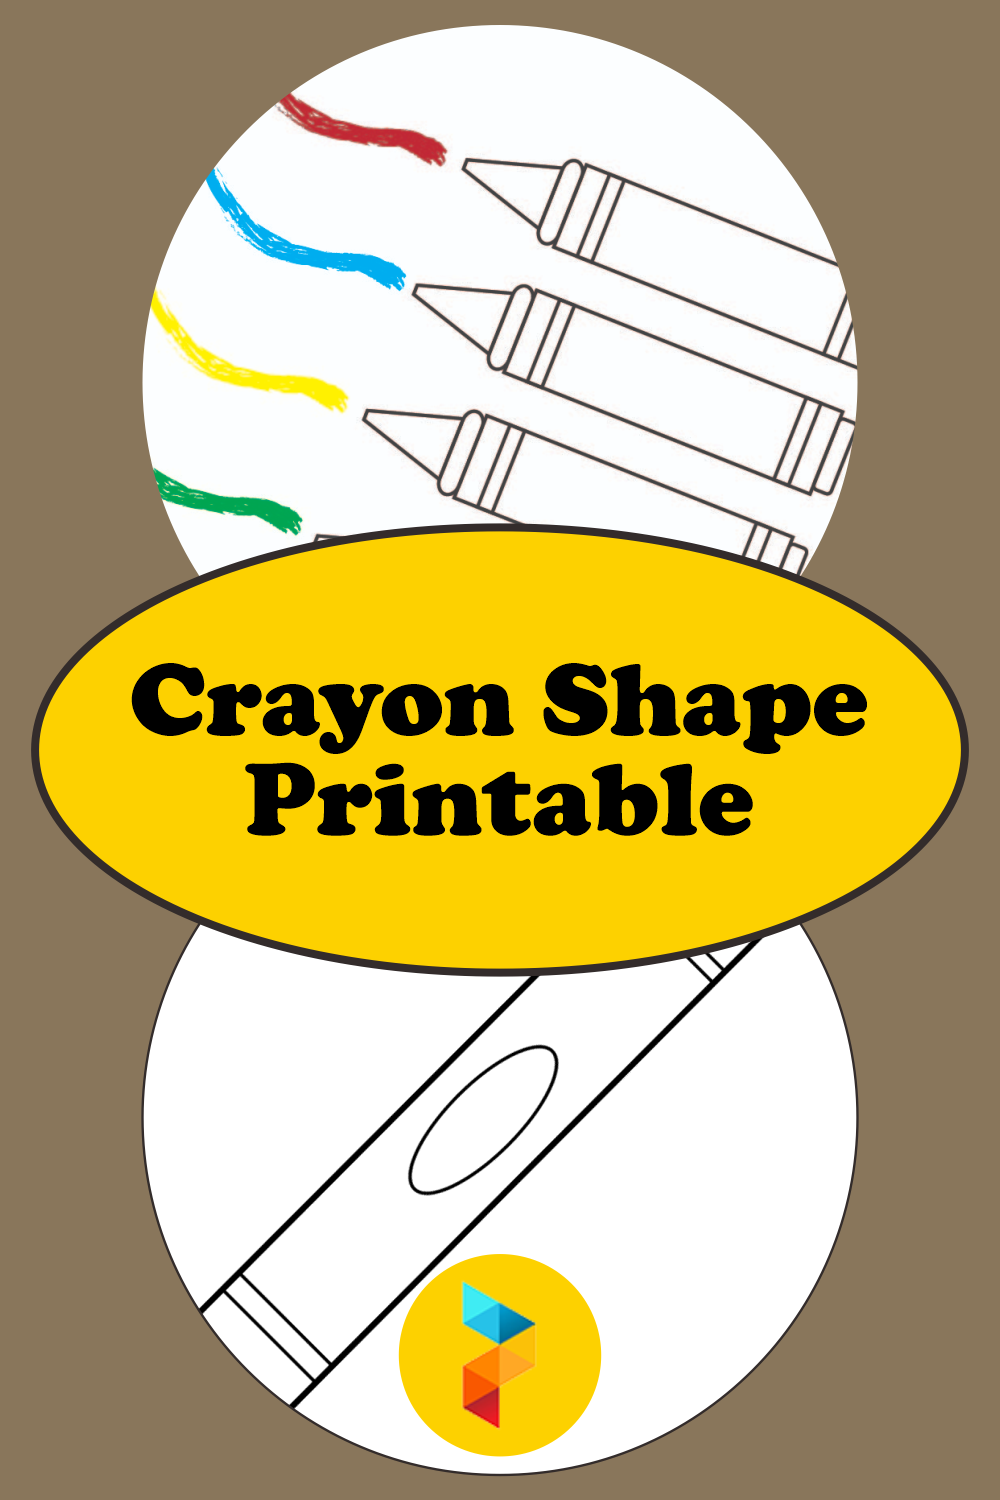 Crayon Shape Printable